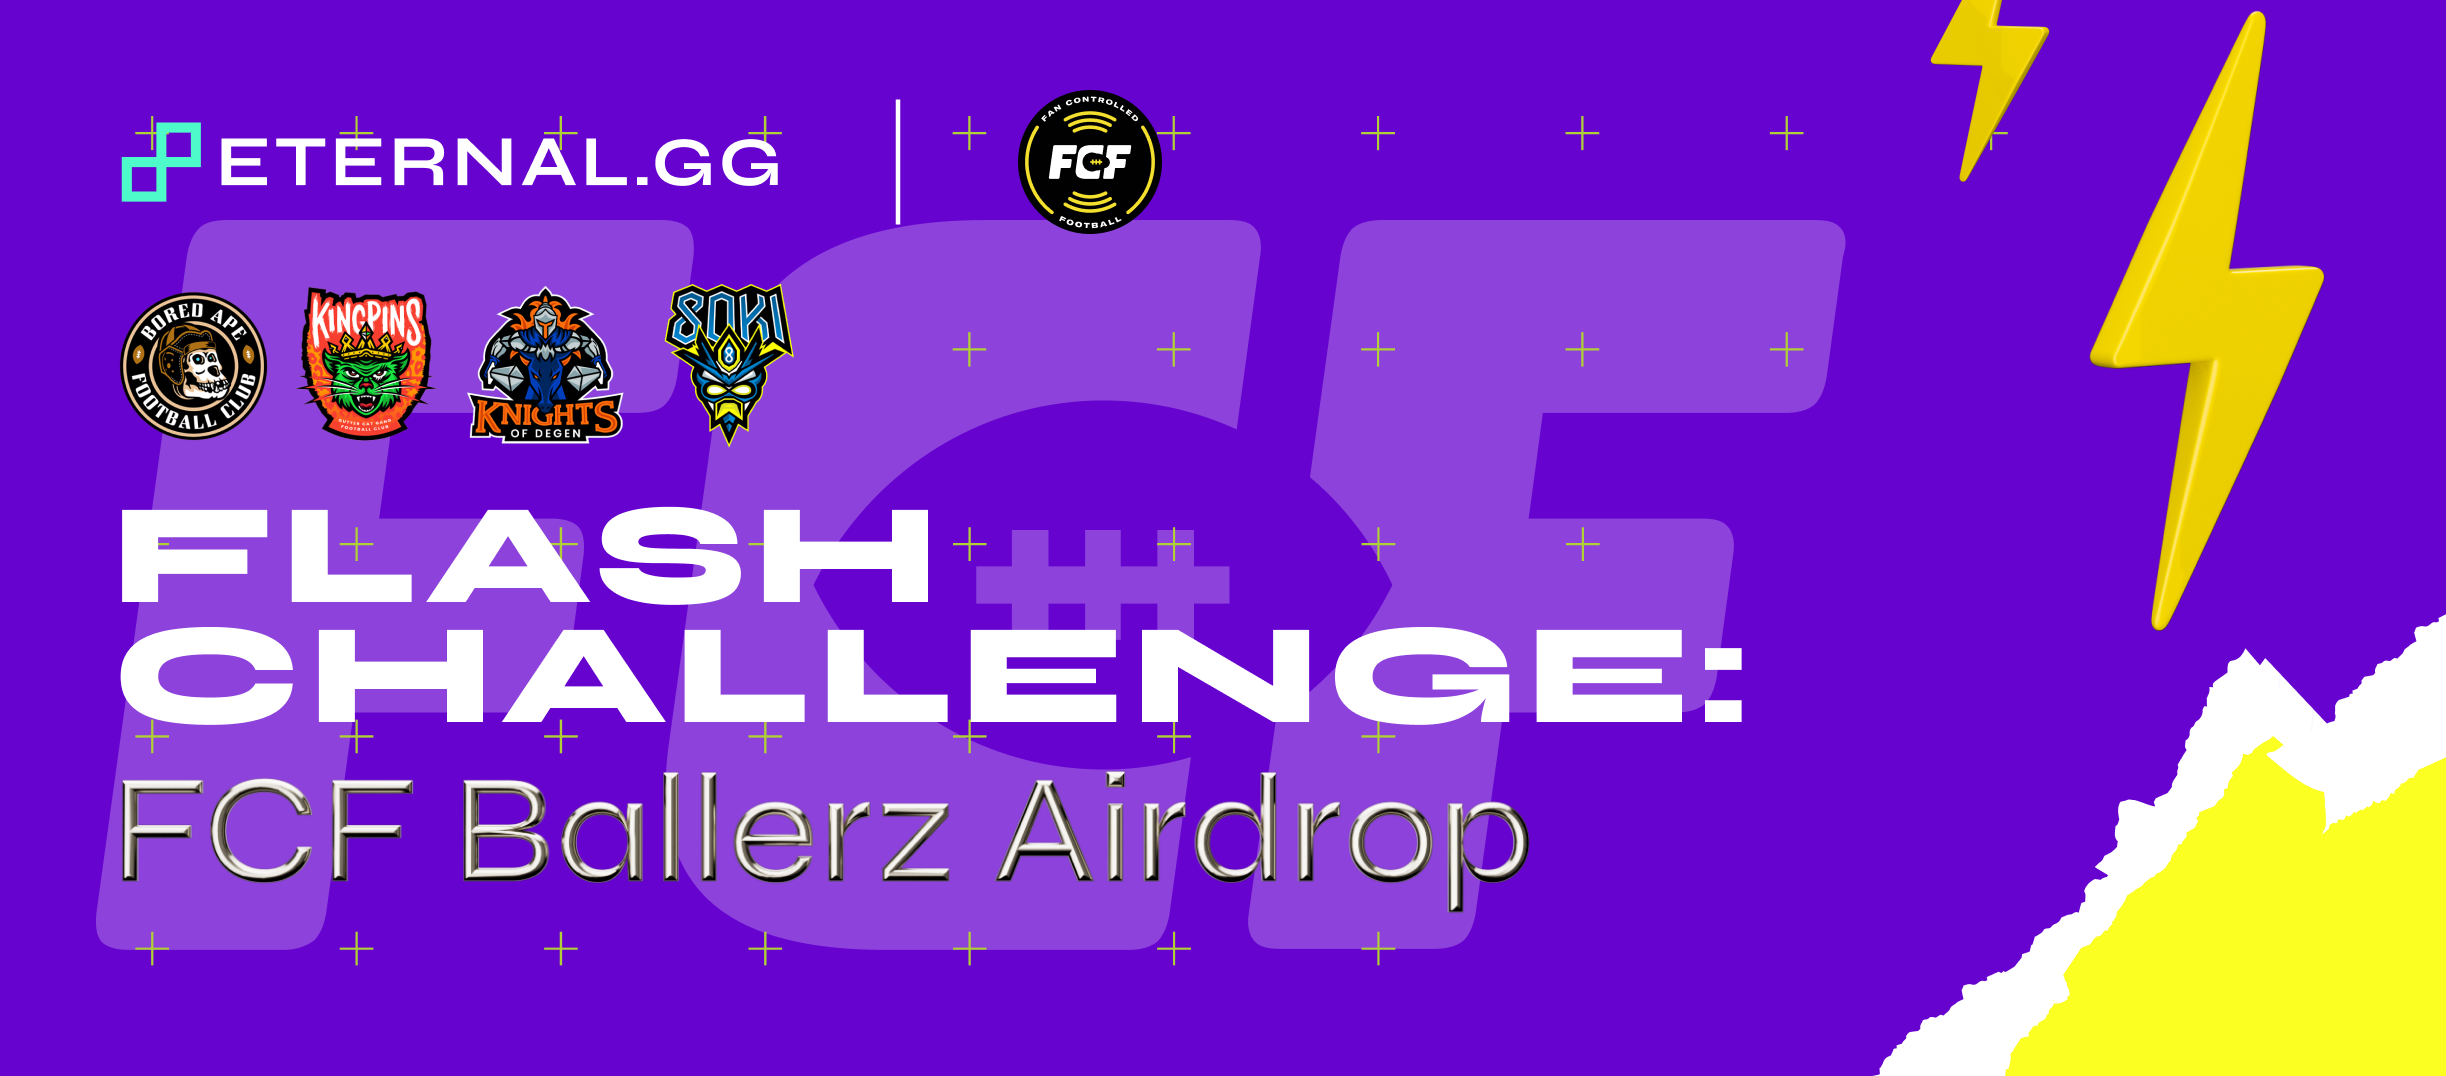 Flash Challenge: FCF Ballerz Airdrop